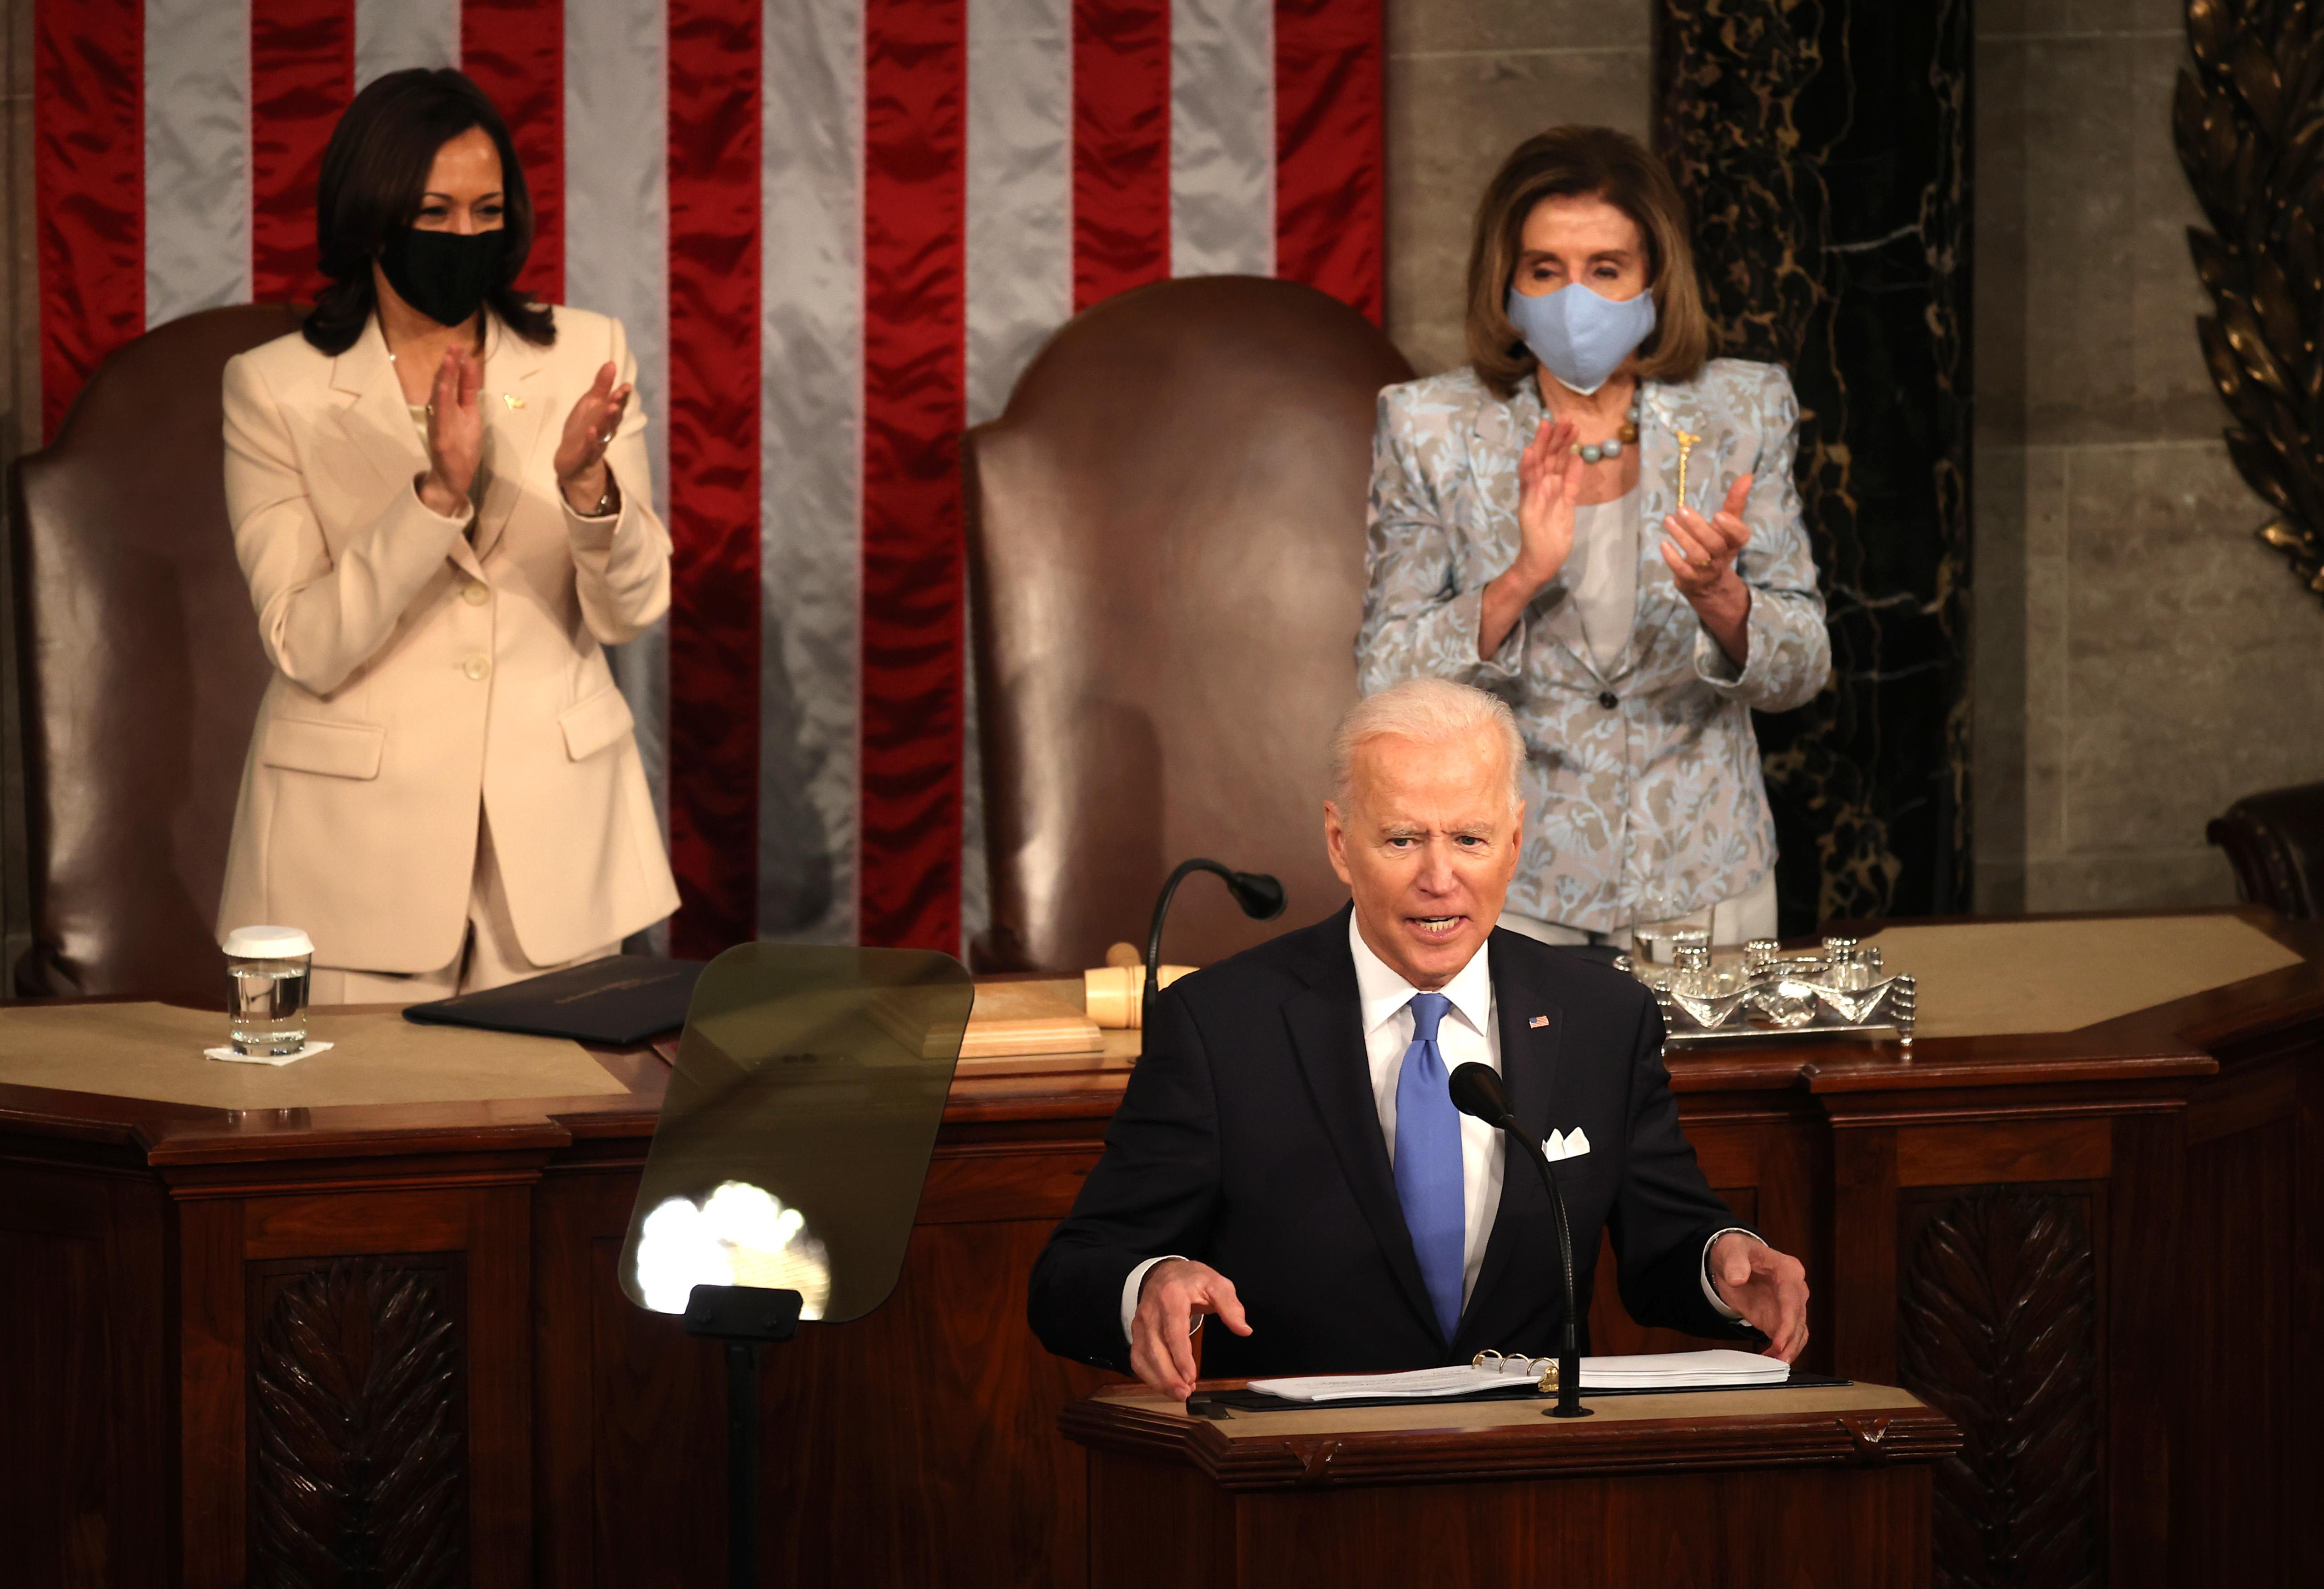 Biden addressing Congress